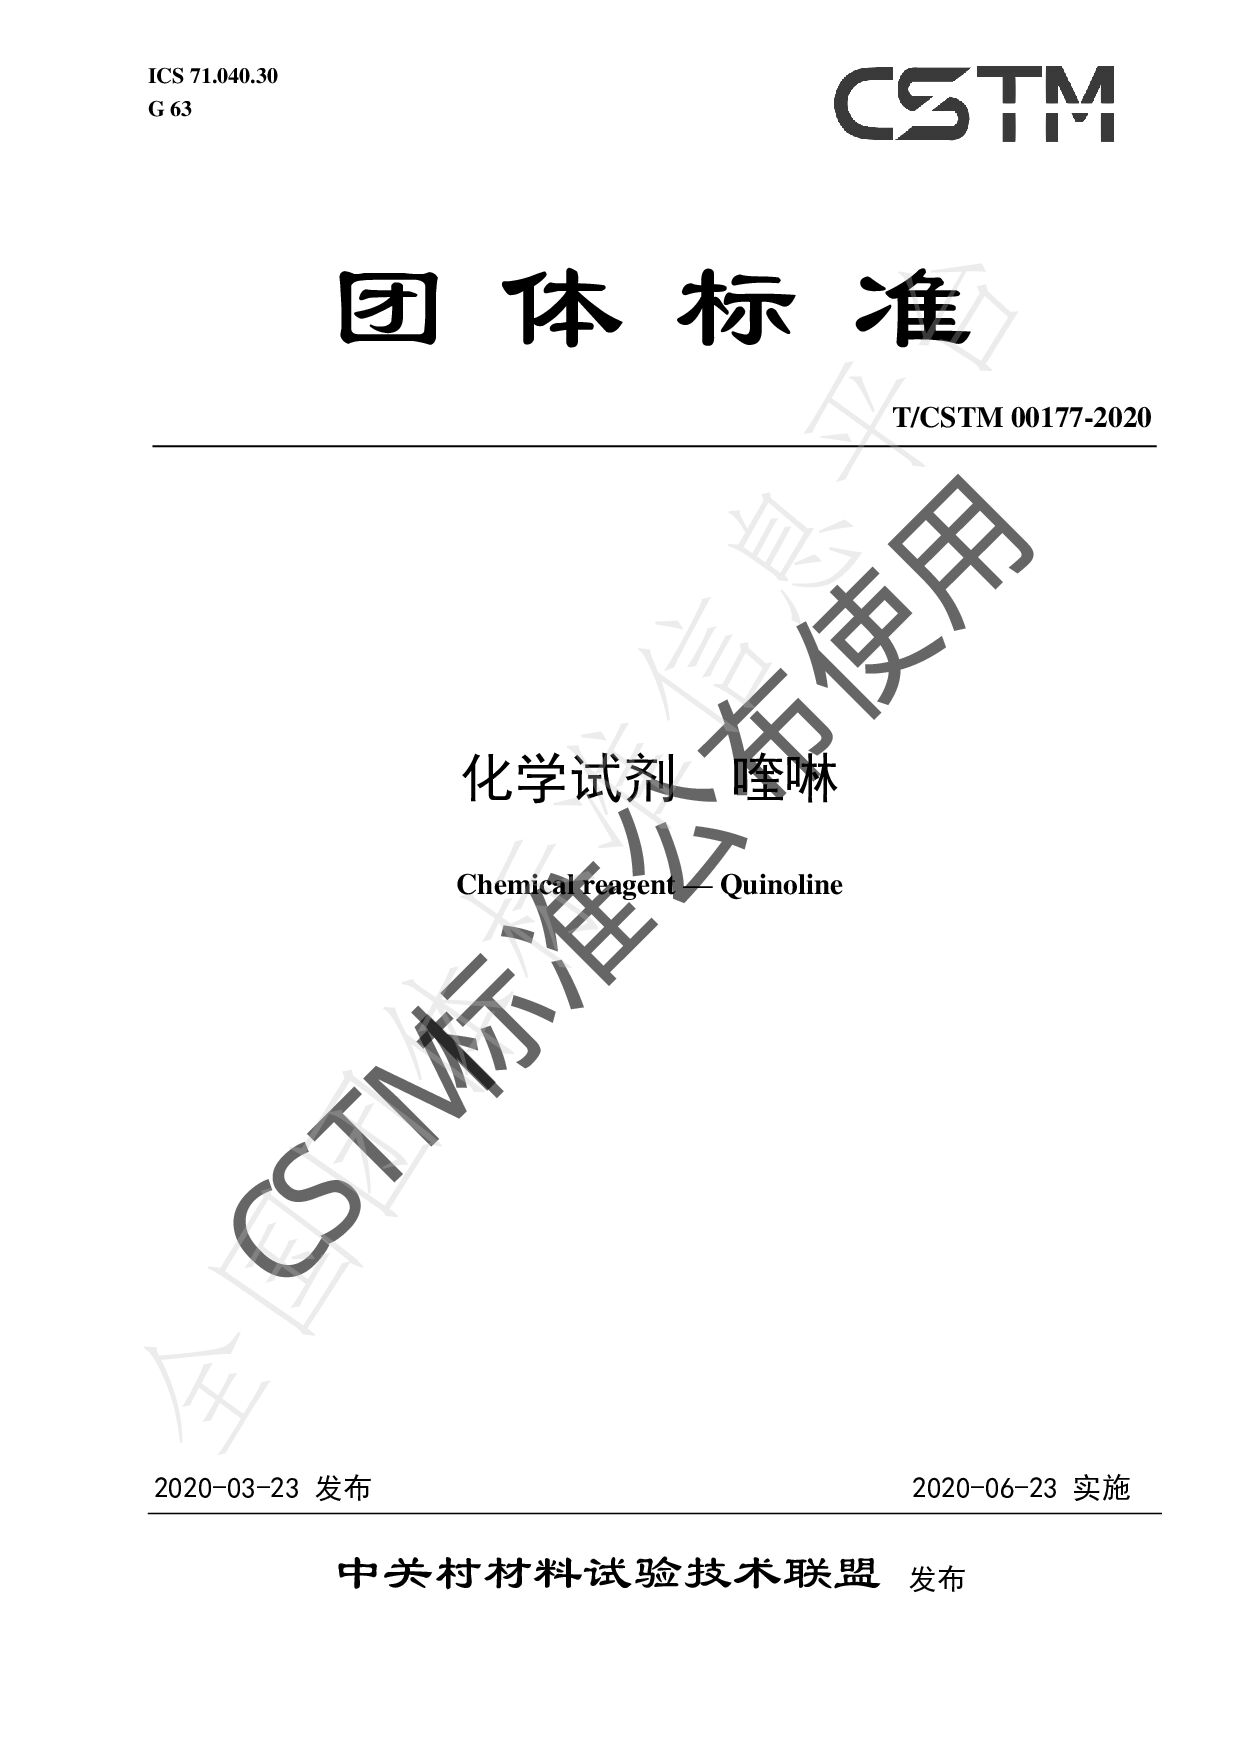 T/CSTM 00177-2020封面图